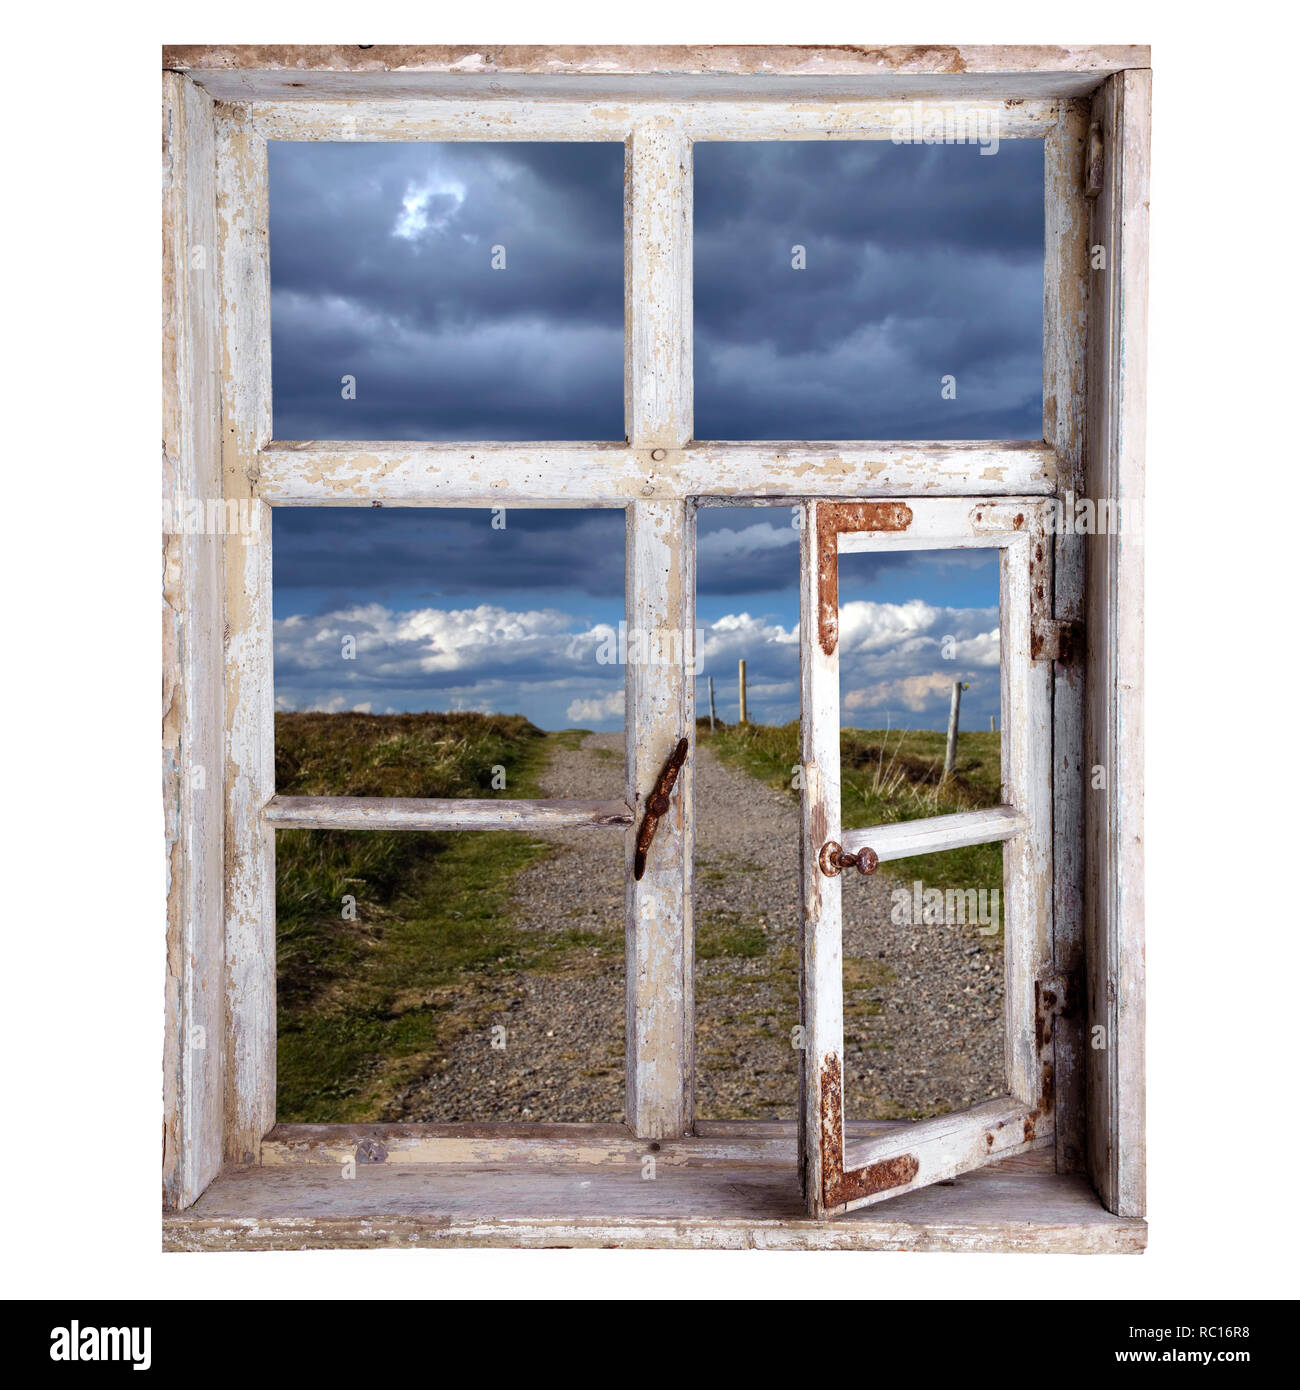 Fenster freigestellt, Blick in die Landschaft Stock Photo